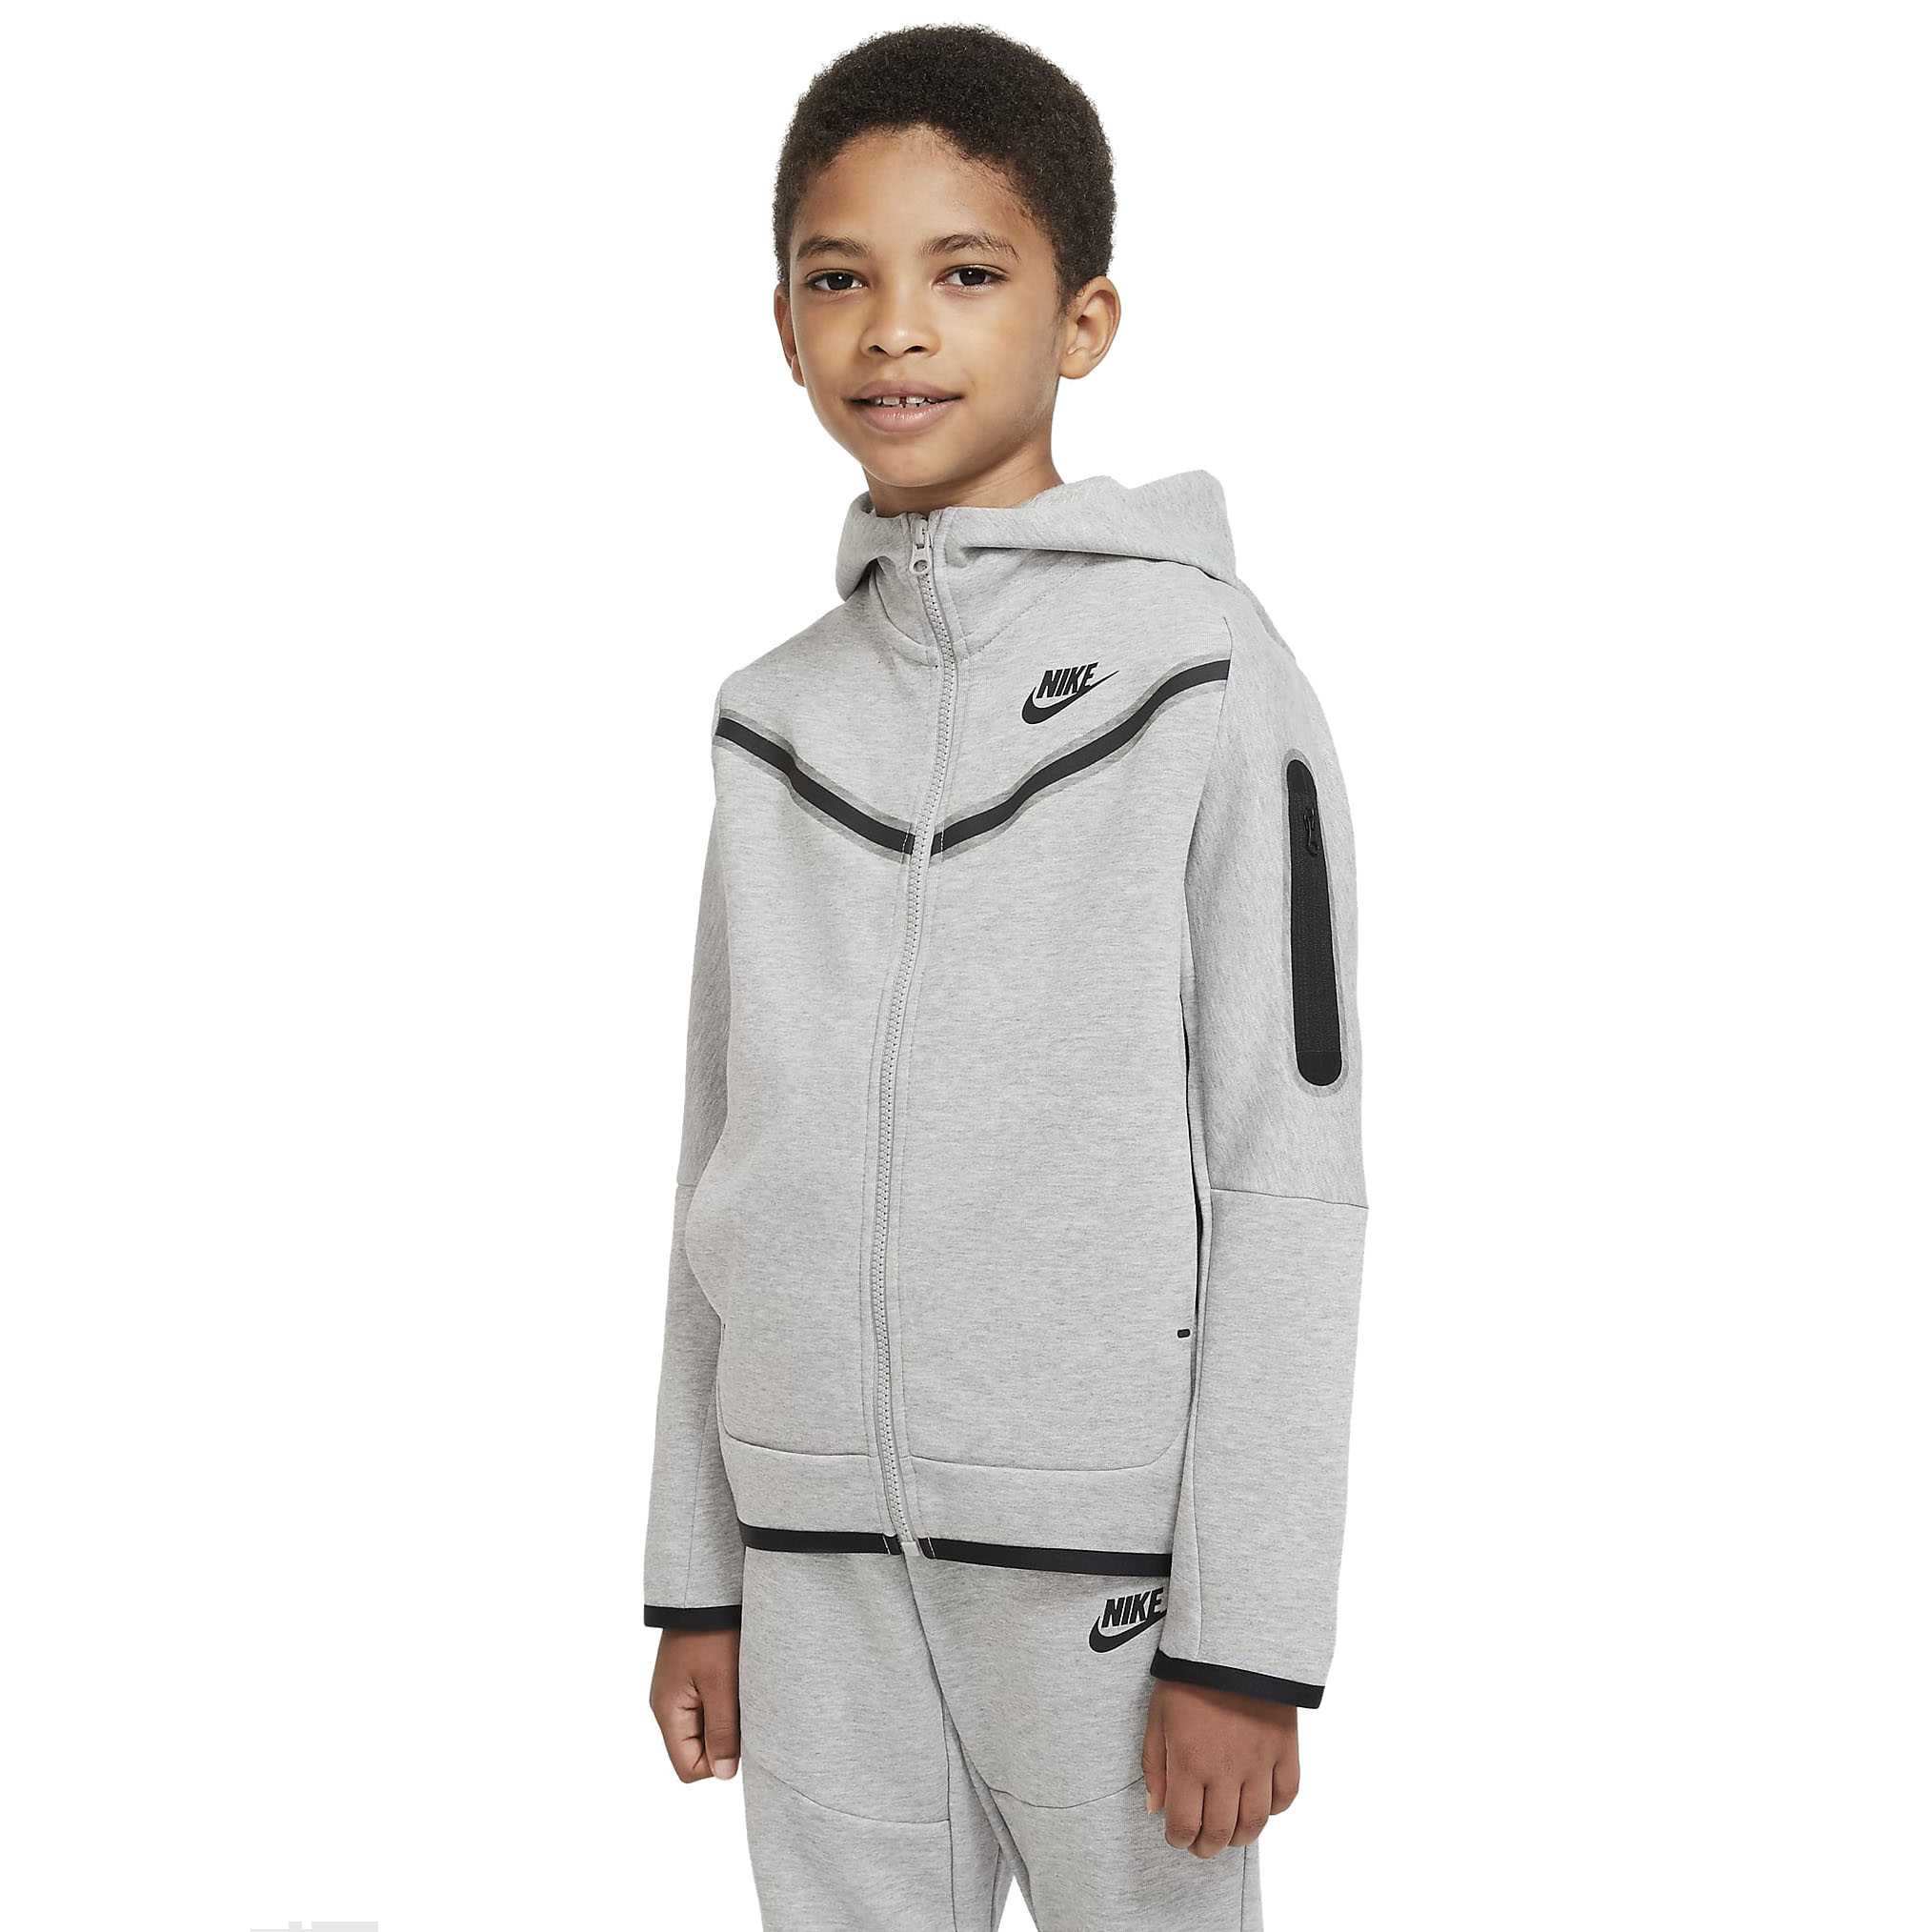 bibliotheek Inpakken mezelf Nike Tech Fleece Vest Kids Grijs | Sportkleding Kids - Ab Geldermans Sport